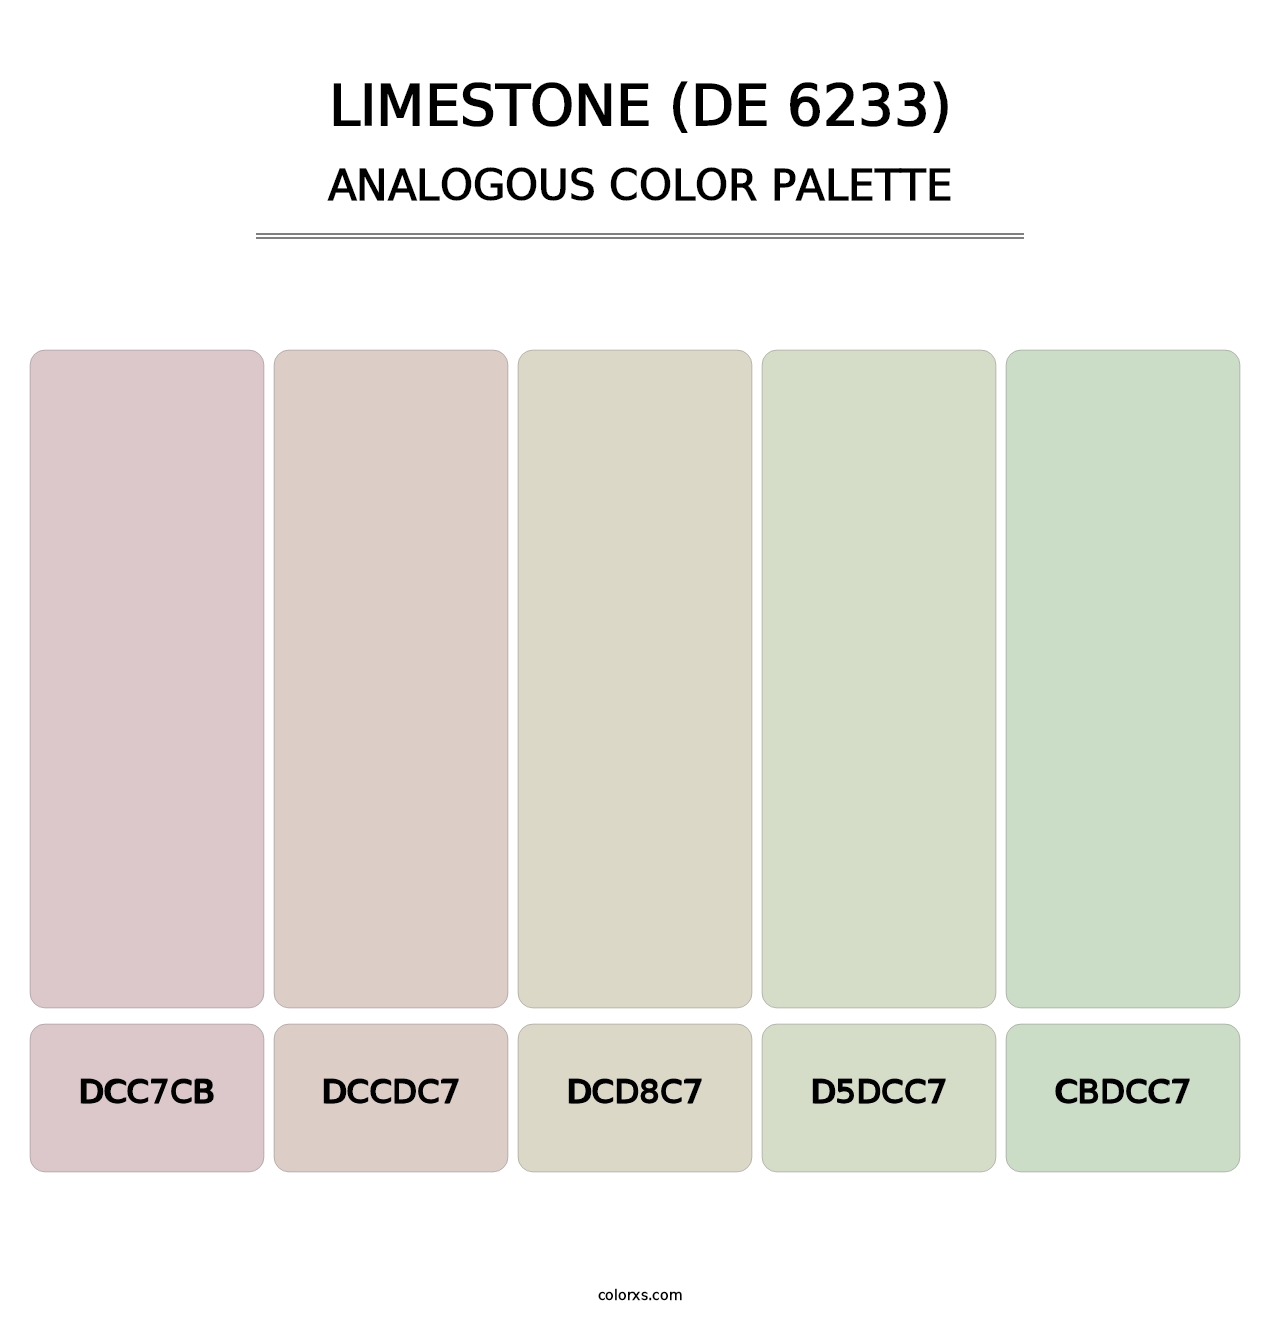 Limestone (DE 6233) - Analogous Color Palette